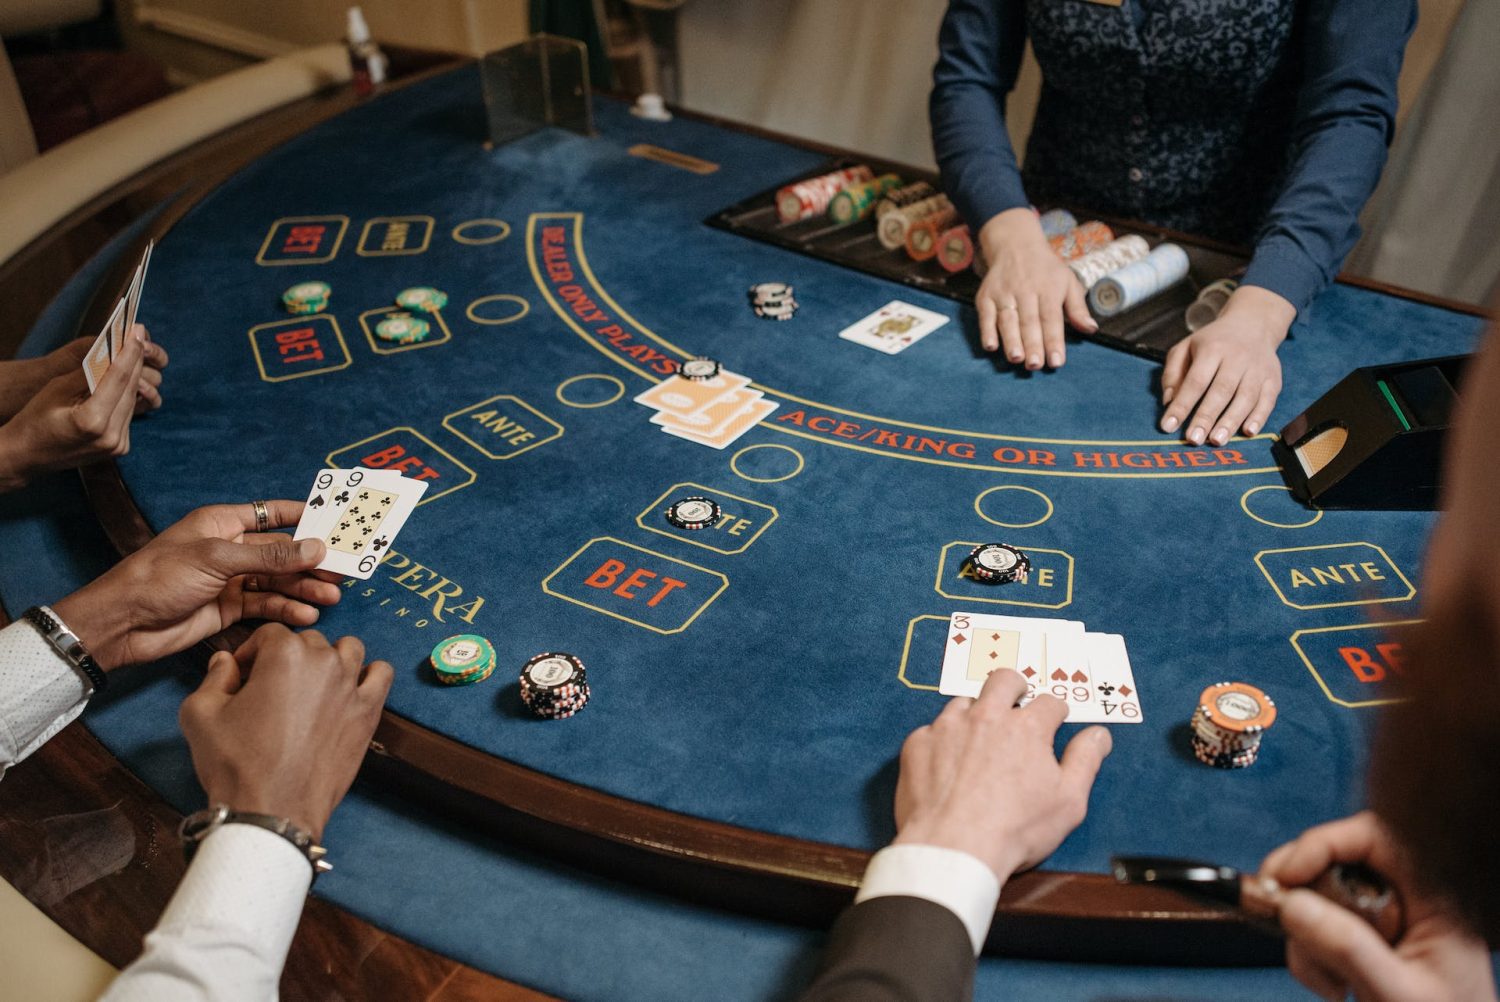 Gokkende vrienden hoe ga je verantwoord om met casinospellen tijdens een uitje?